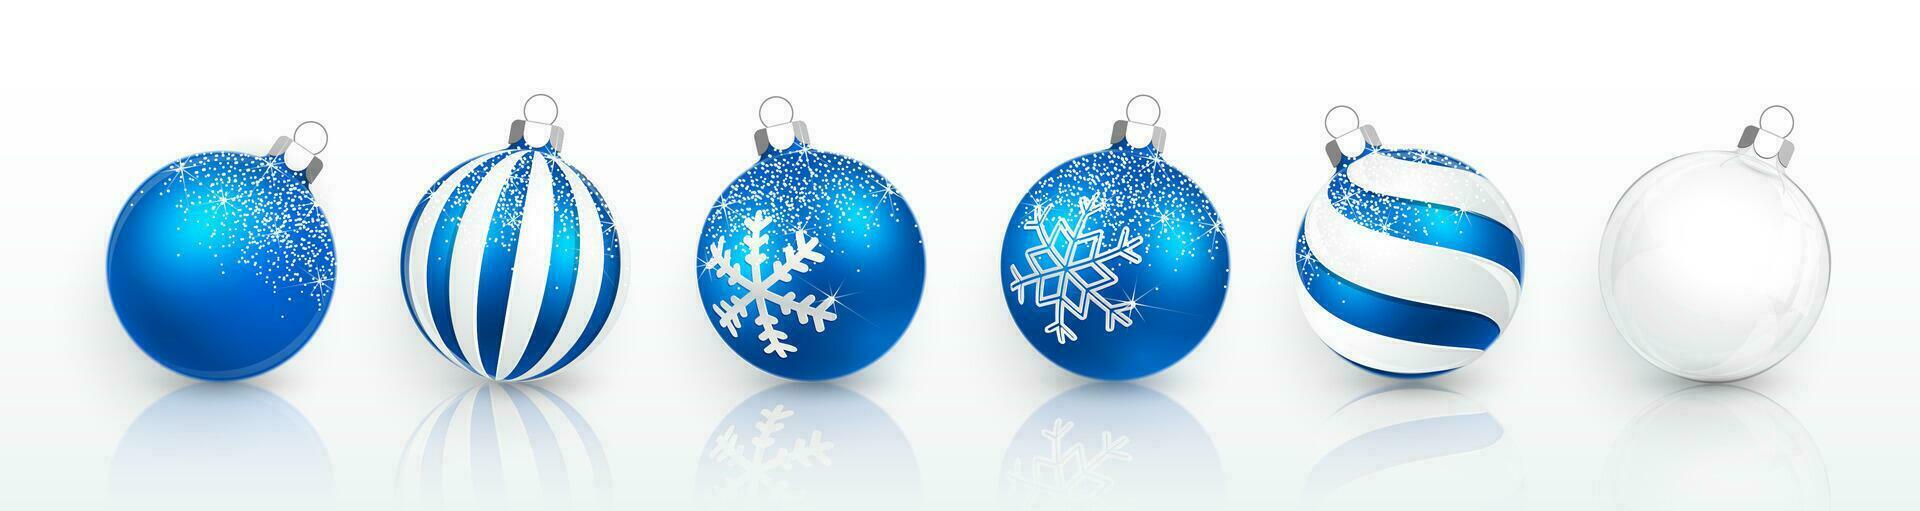 transparente y azul Navidad pelota con nieve efecto colocar. Navidad vaso pelota en blanco antecedentes. fiesta decoración modelo. vector ilustración